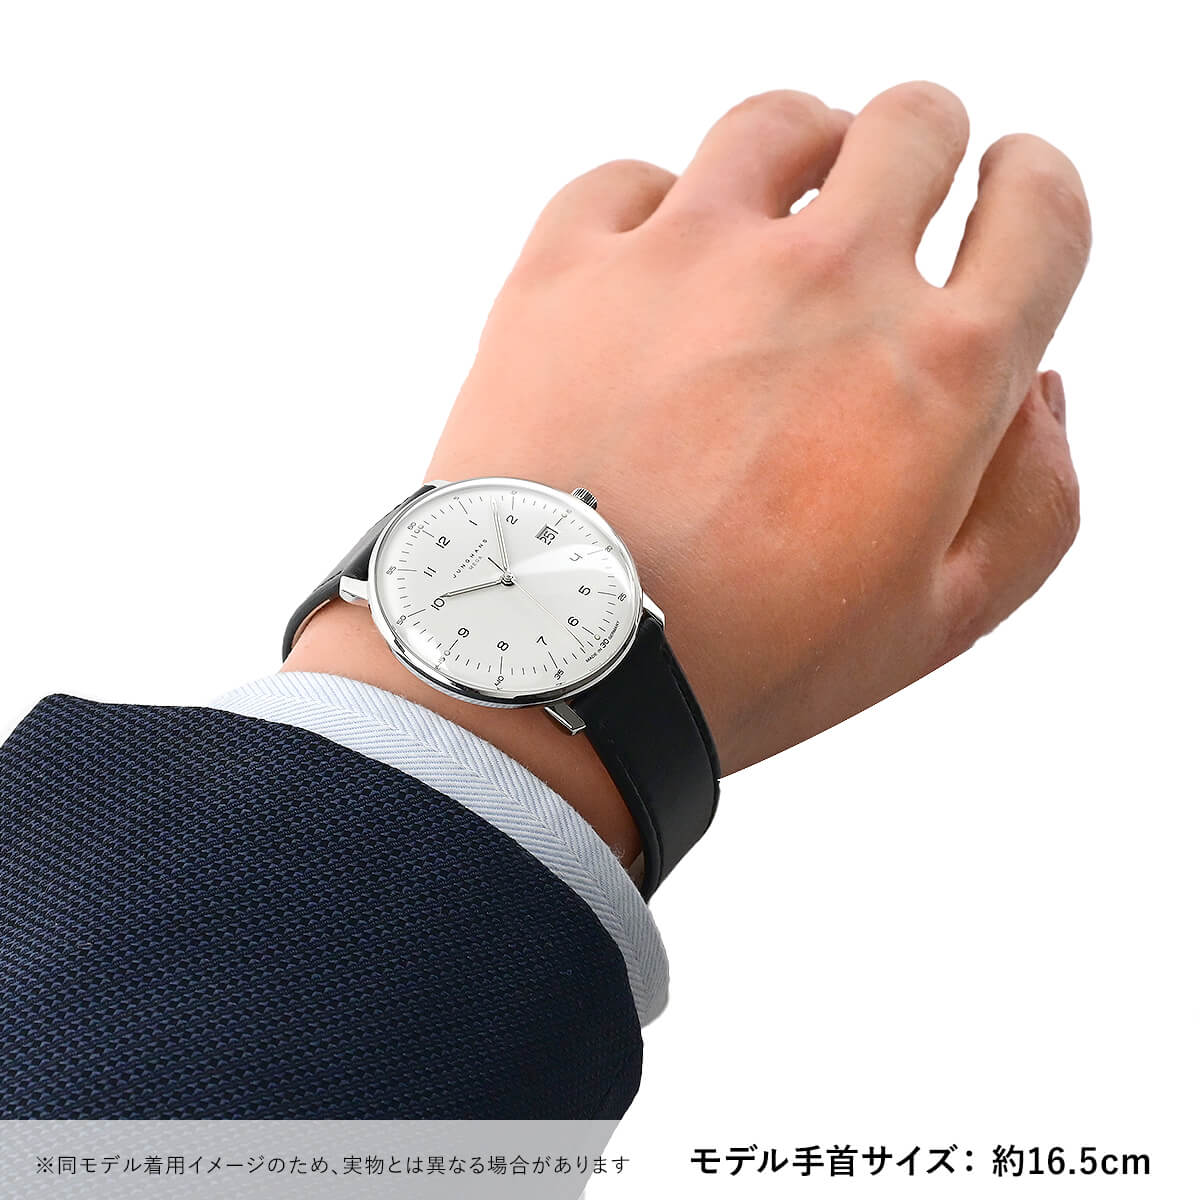 21,850円ユンハンス　マックスビル　メガ　電波式腕時計